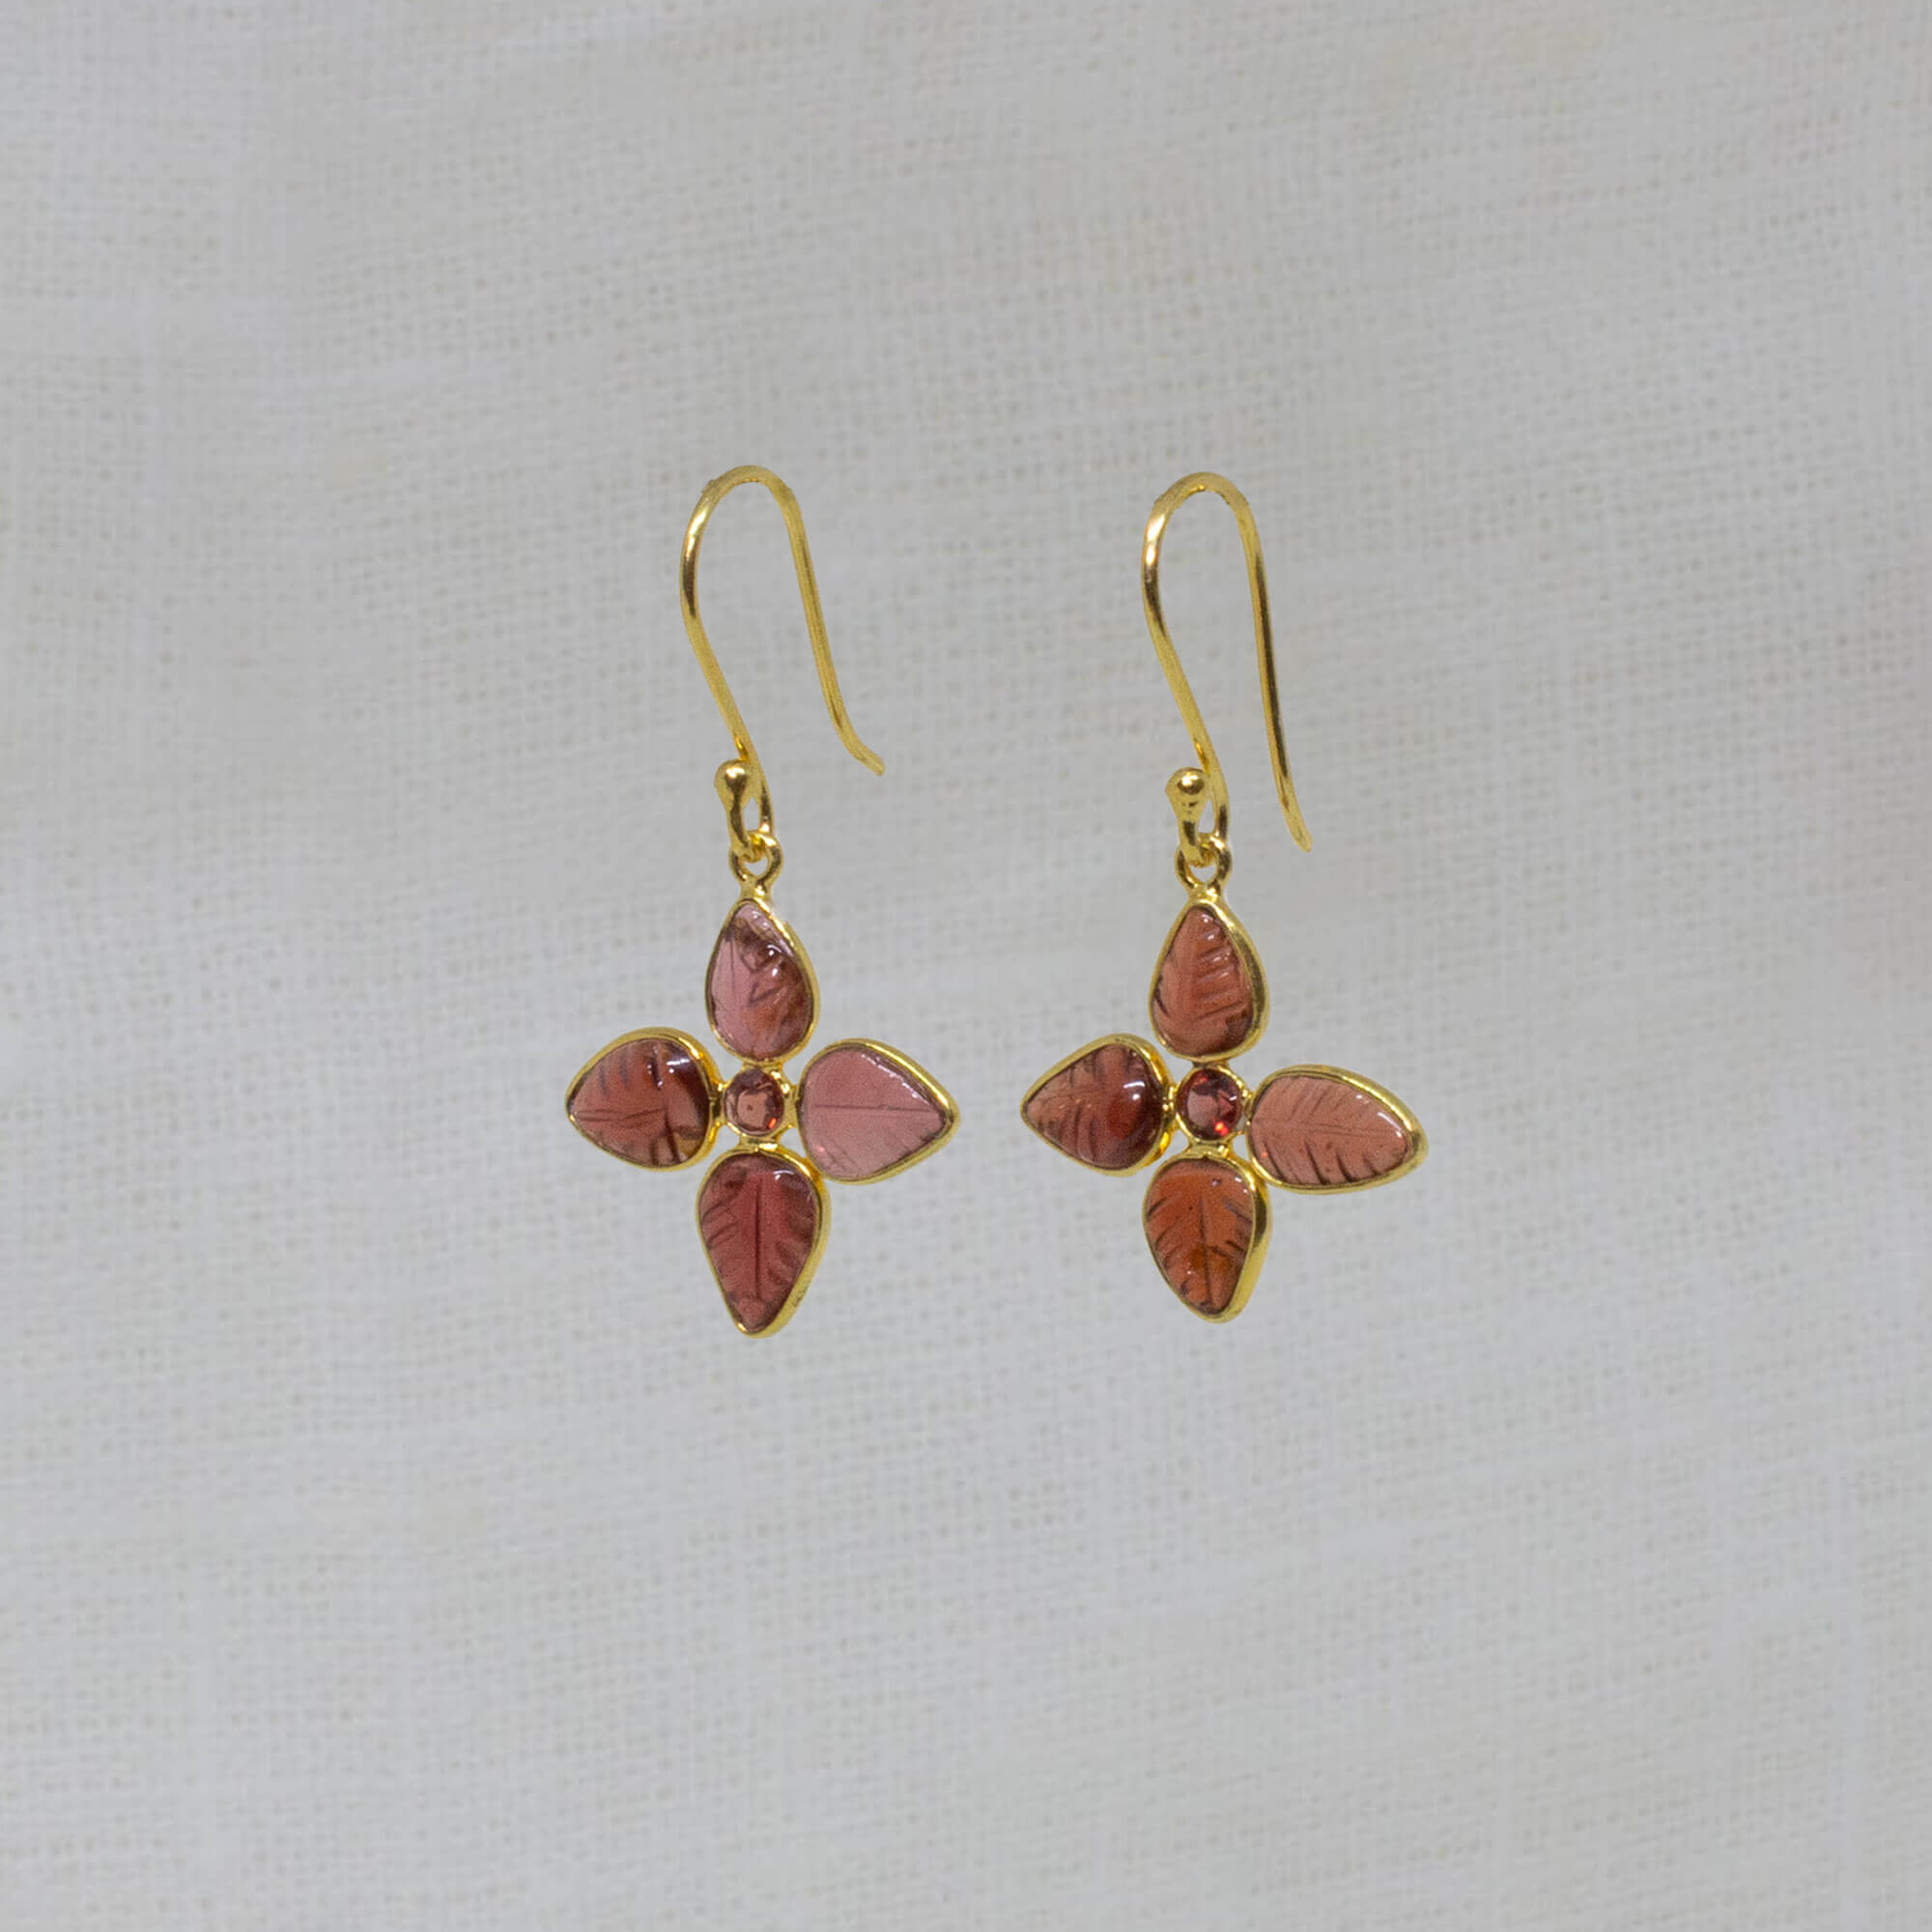 Carved garnet gemstone flower earrings in 18k gold vermeil - Beyond Biasa